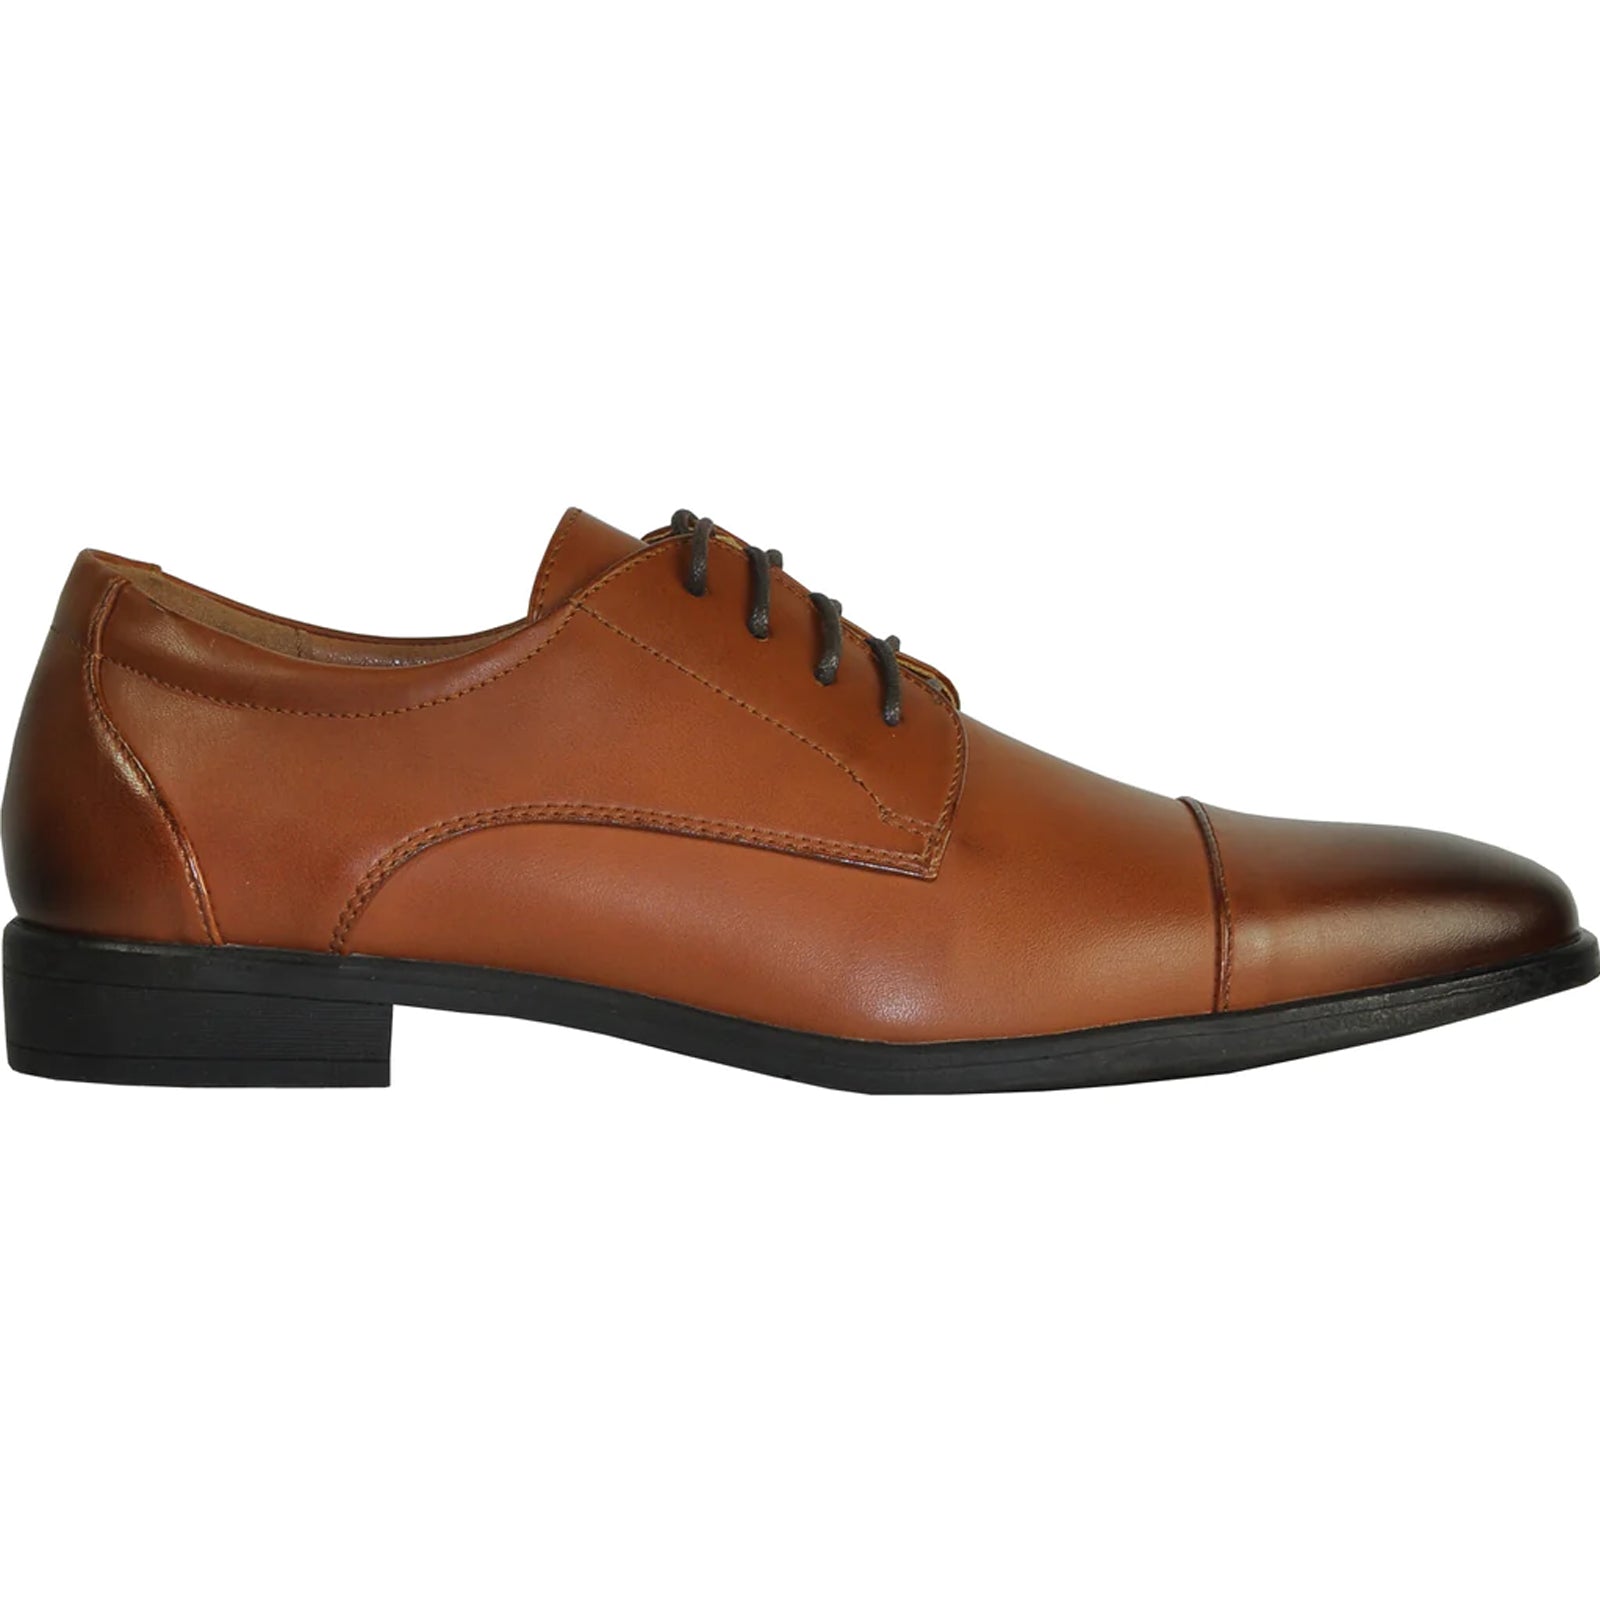 "Antique Brown Vintage Oxford Cap Toe Men's Dress Shoe"